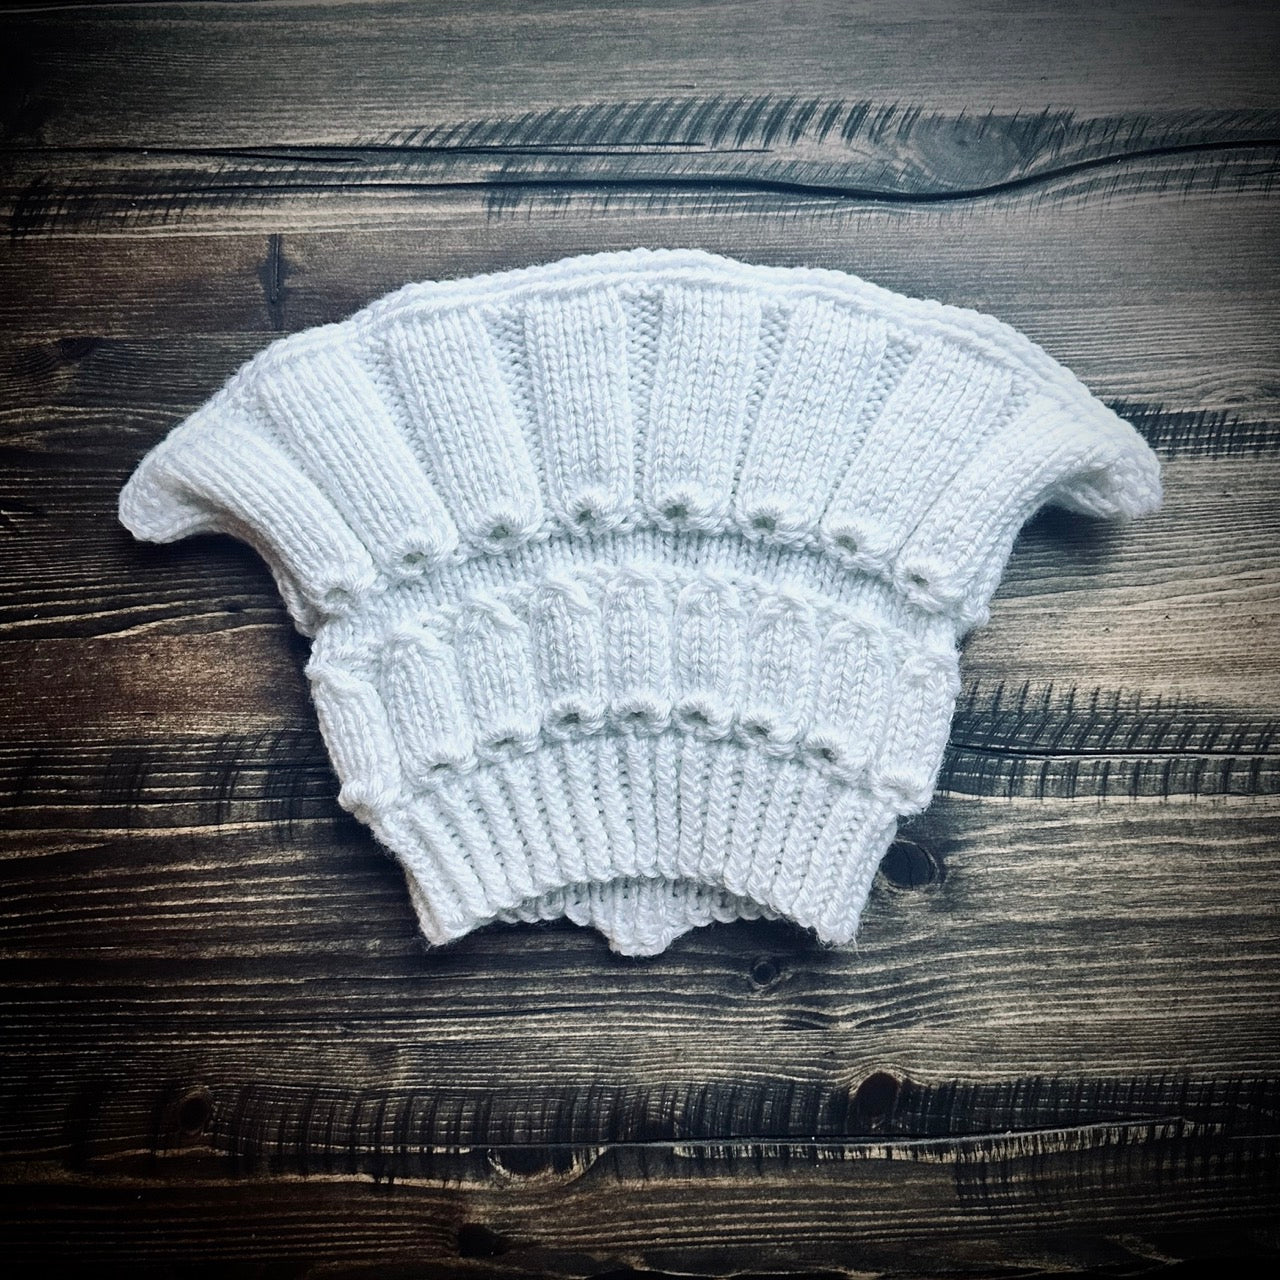 Handmade knitted winter white beanie